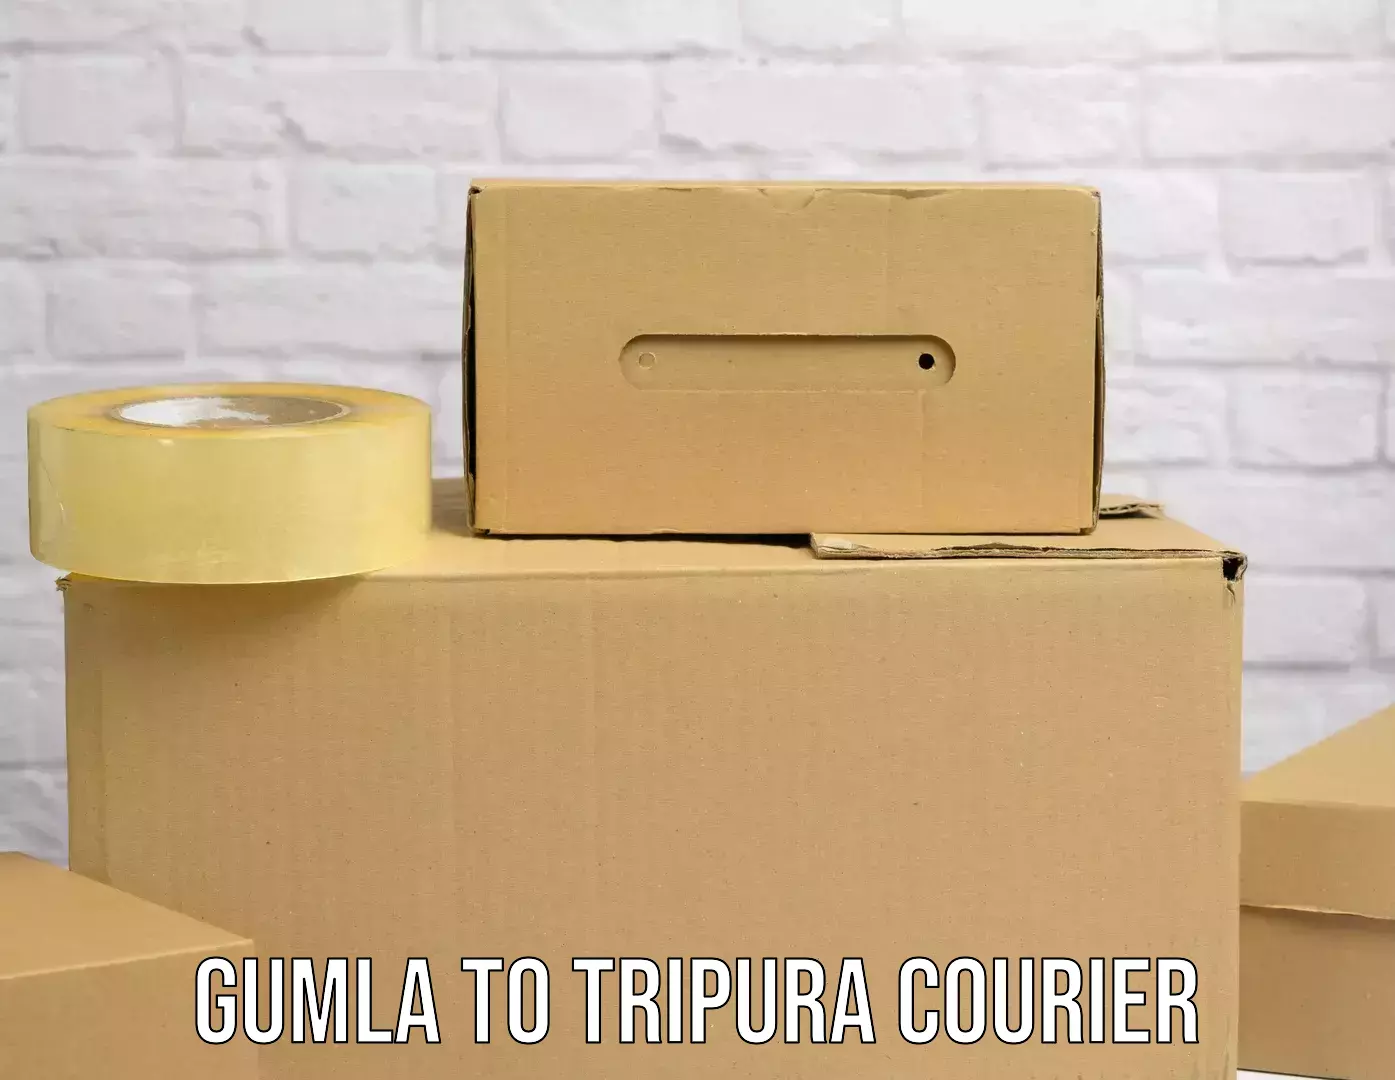 Digital courier platforms Gumla to NIT Agartala